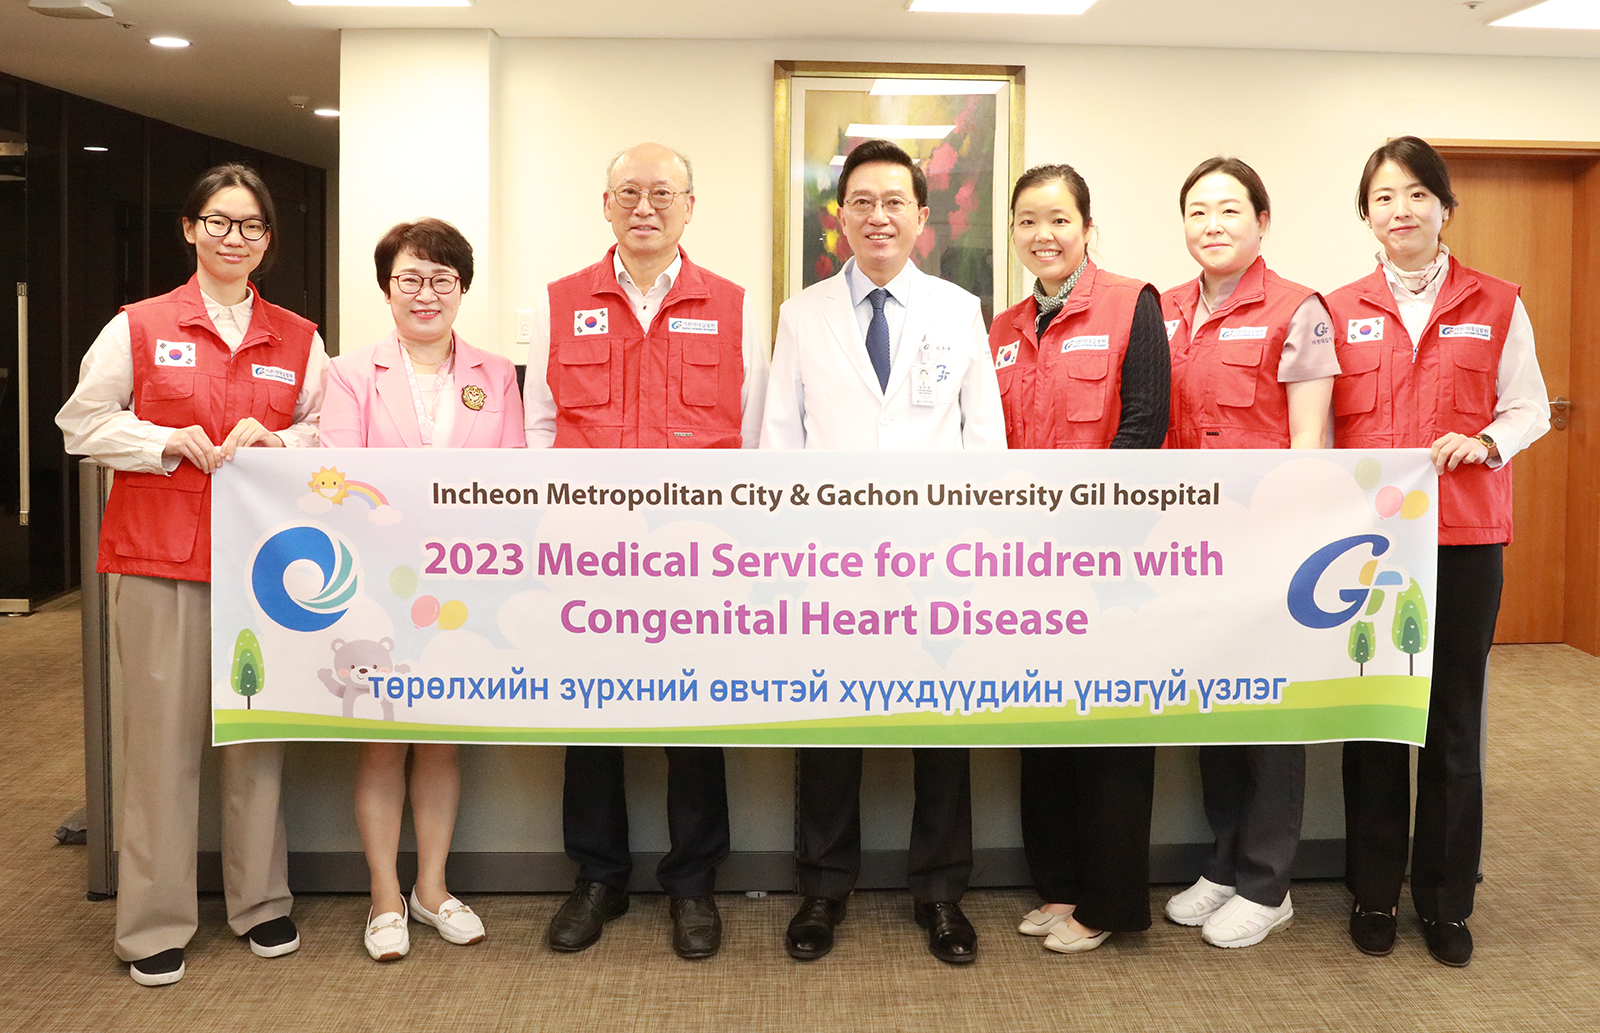 가천대 길병원, 몽골 심장병 의료봉사 출정식 개최